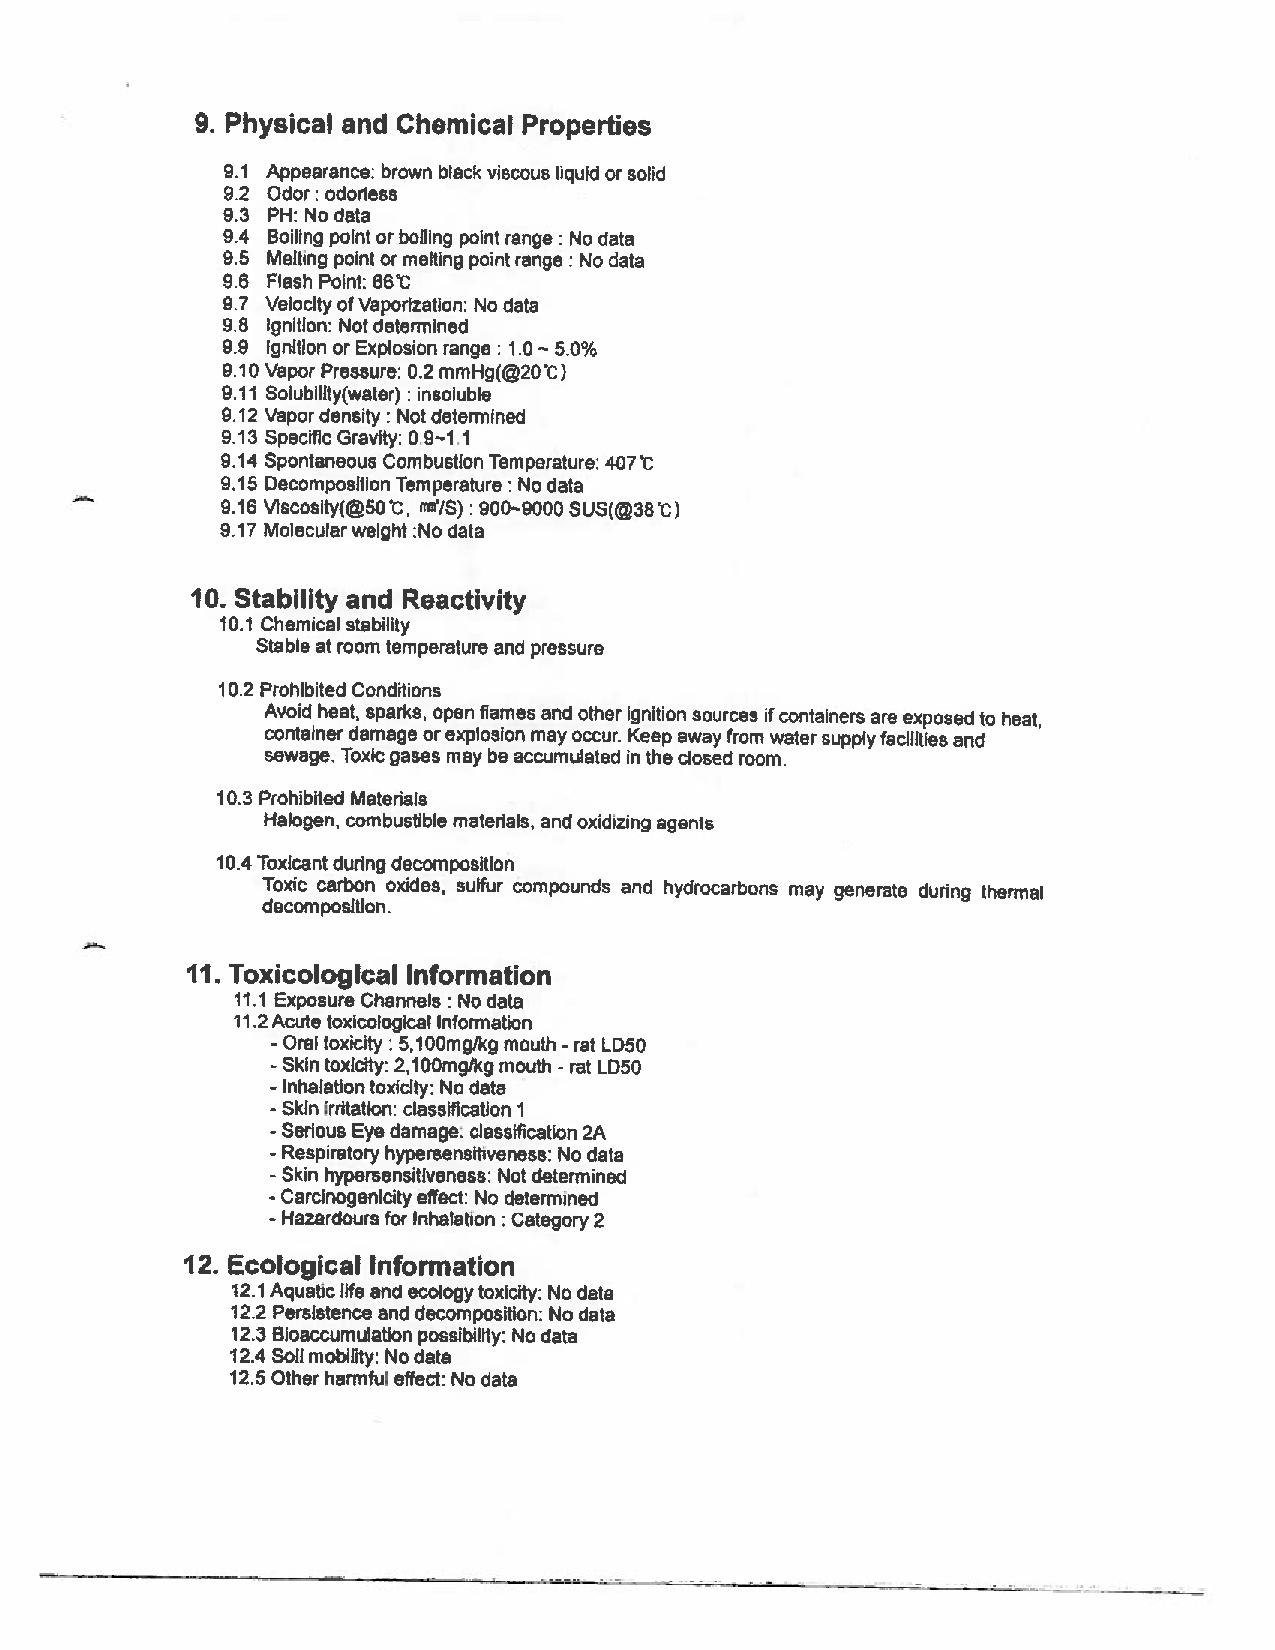 Version anglaise seulement - Page 5 numérisée de la Fiche technique sur la sécurité des substances présentes à bord le M/V Marathassa